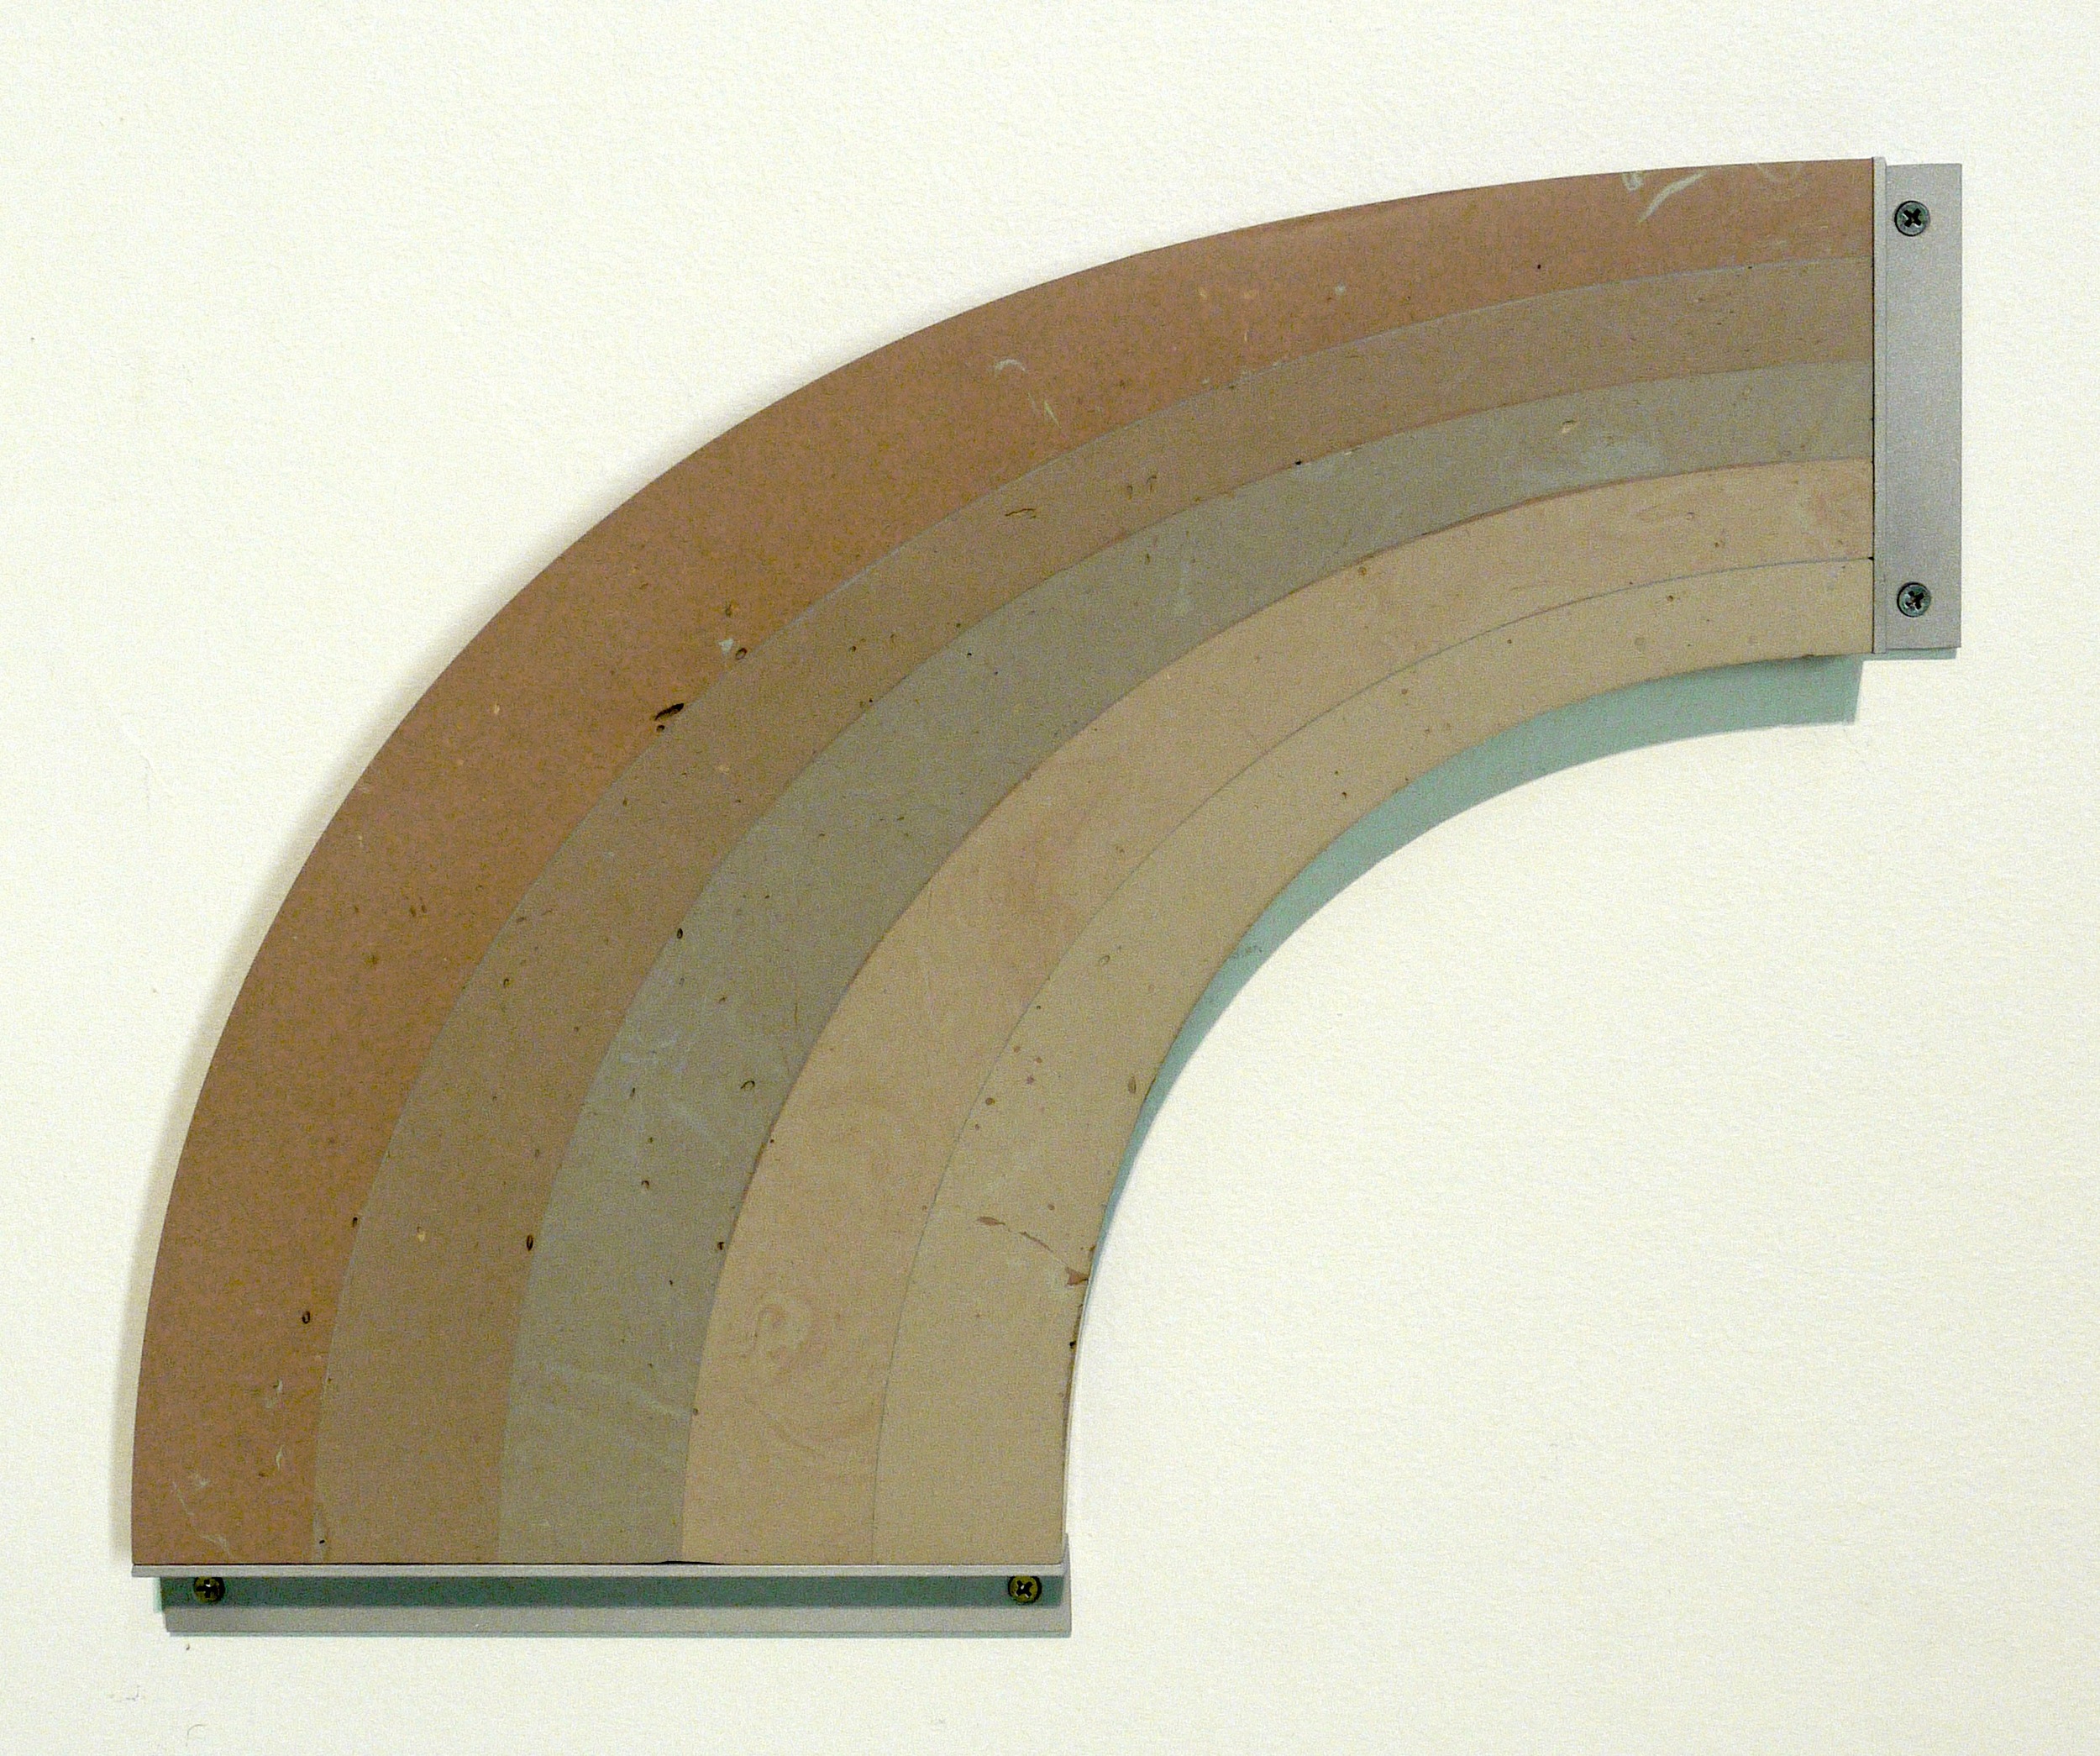  Bondo Rainbow, 2014, 22"x18"x2", bondo, aluminum,&nbsp;hardware 